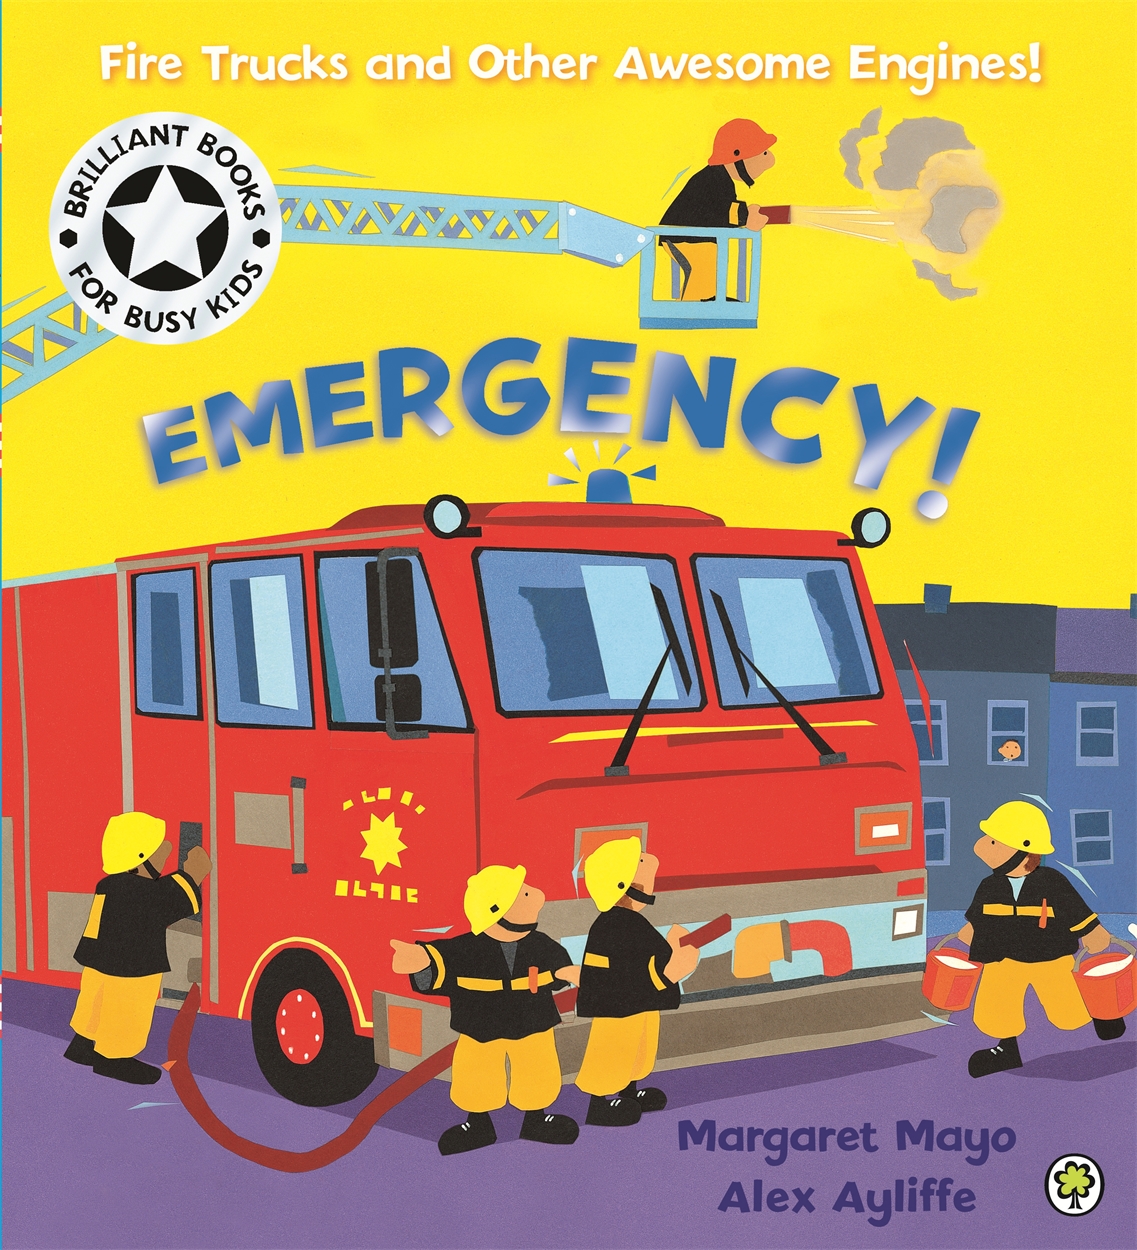 Awesome Engines: Emergency! by Margaret Mayo | Hachette UK